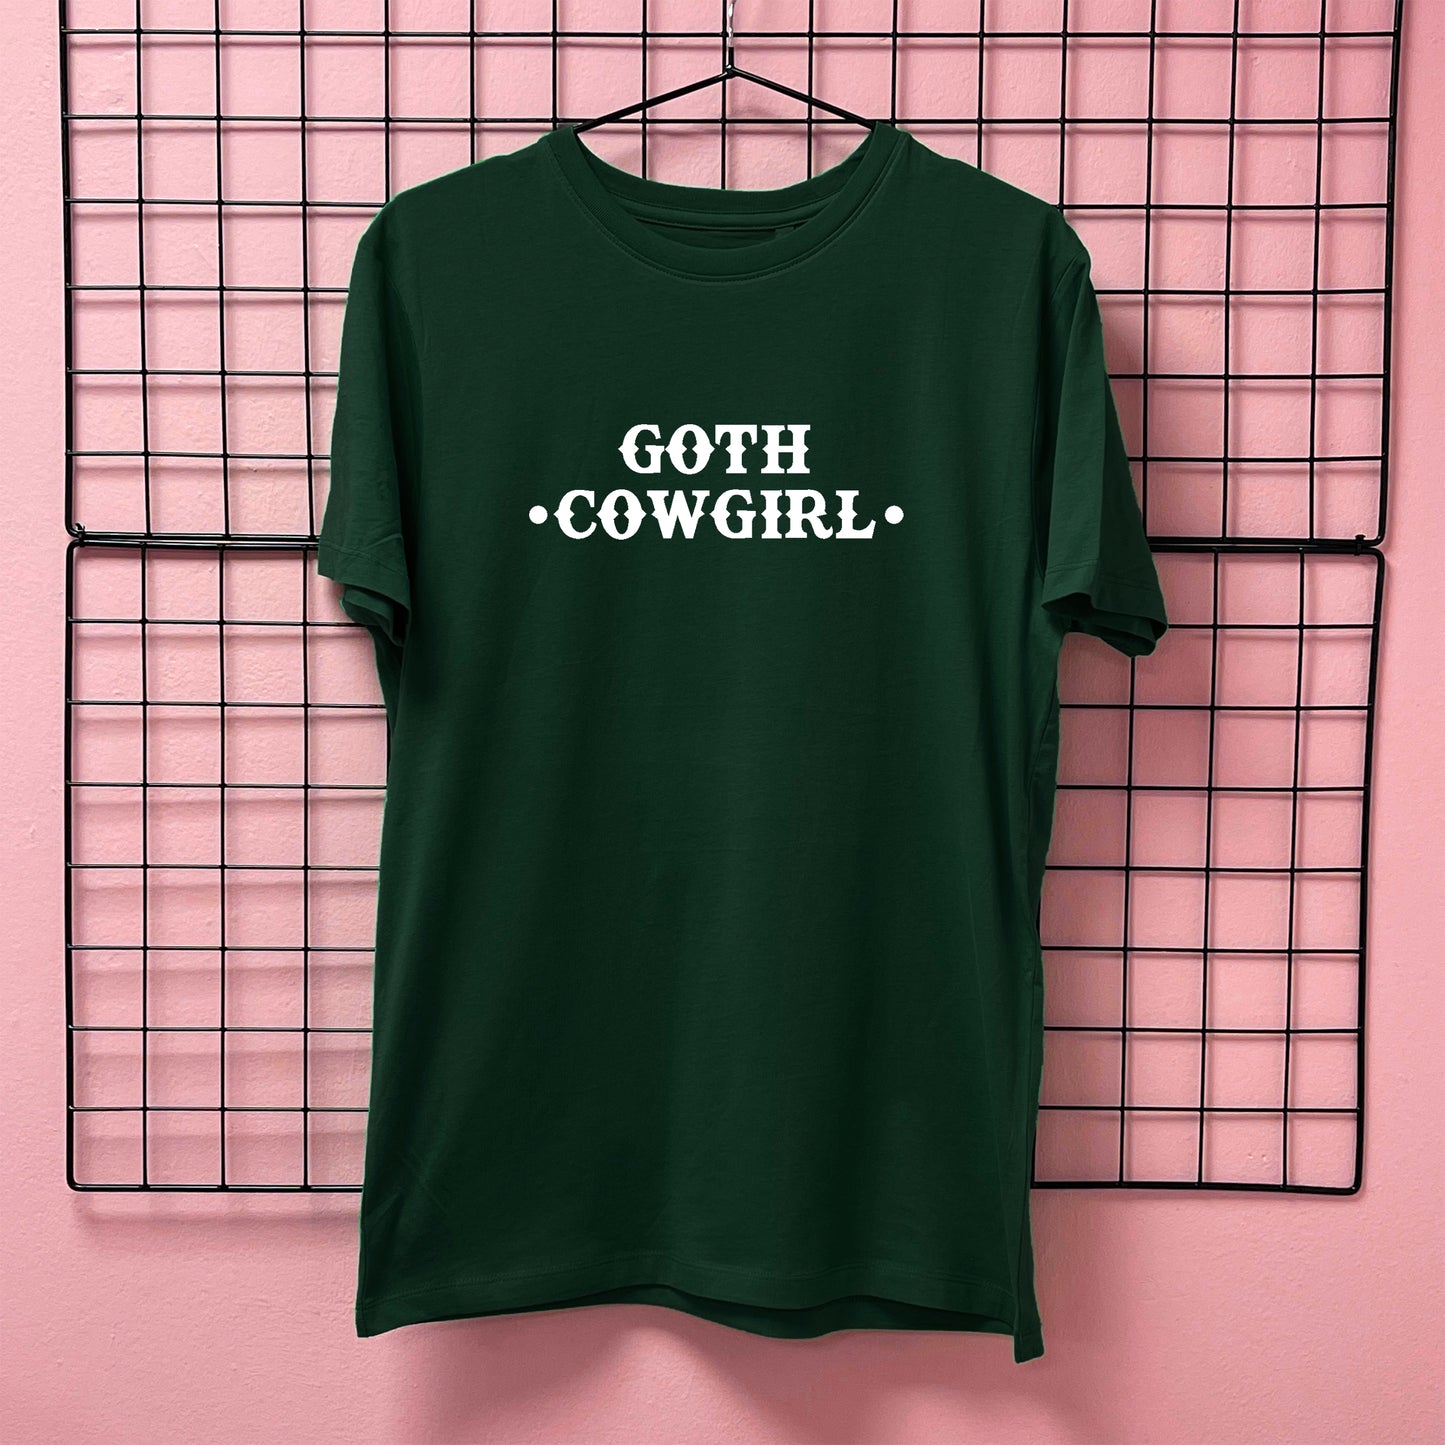 GOTH COWGIRL T-SHIRT